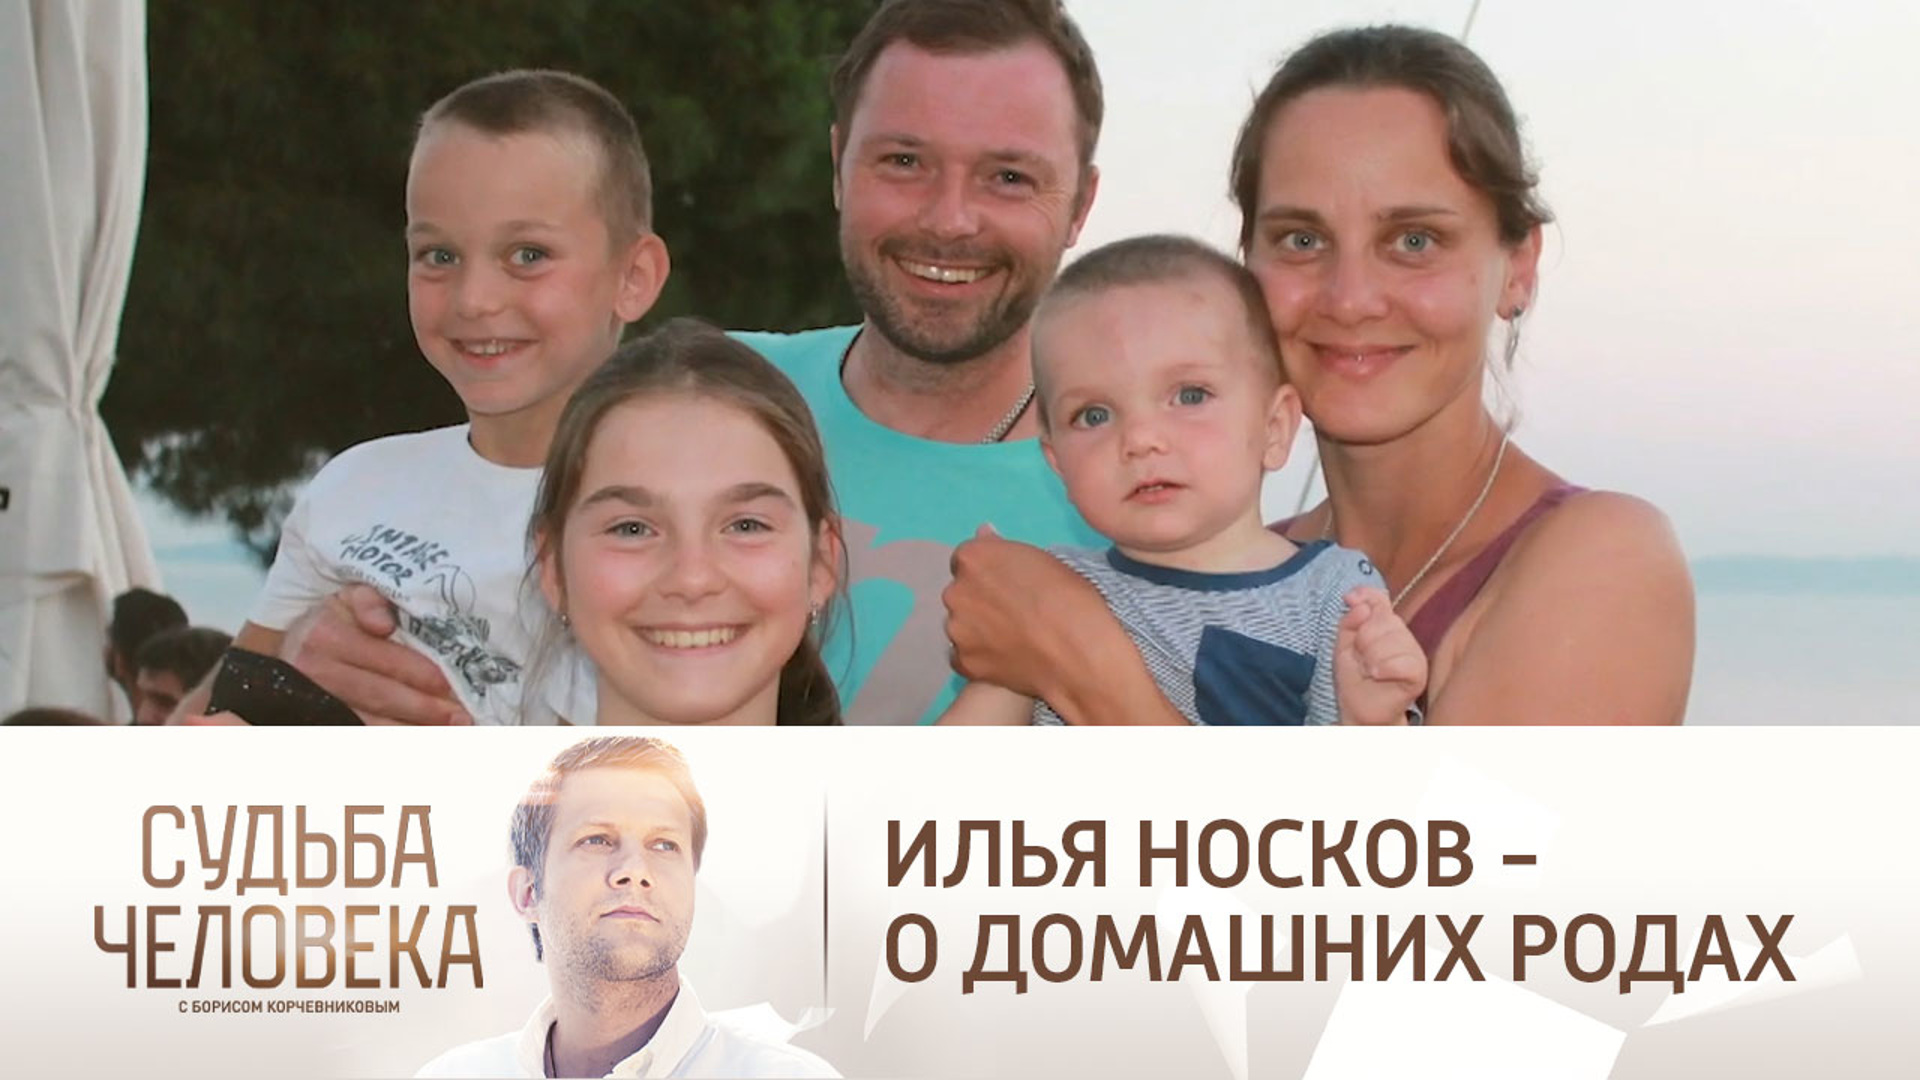 Илья носков биография википедия личная жизнь жена дети